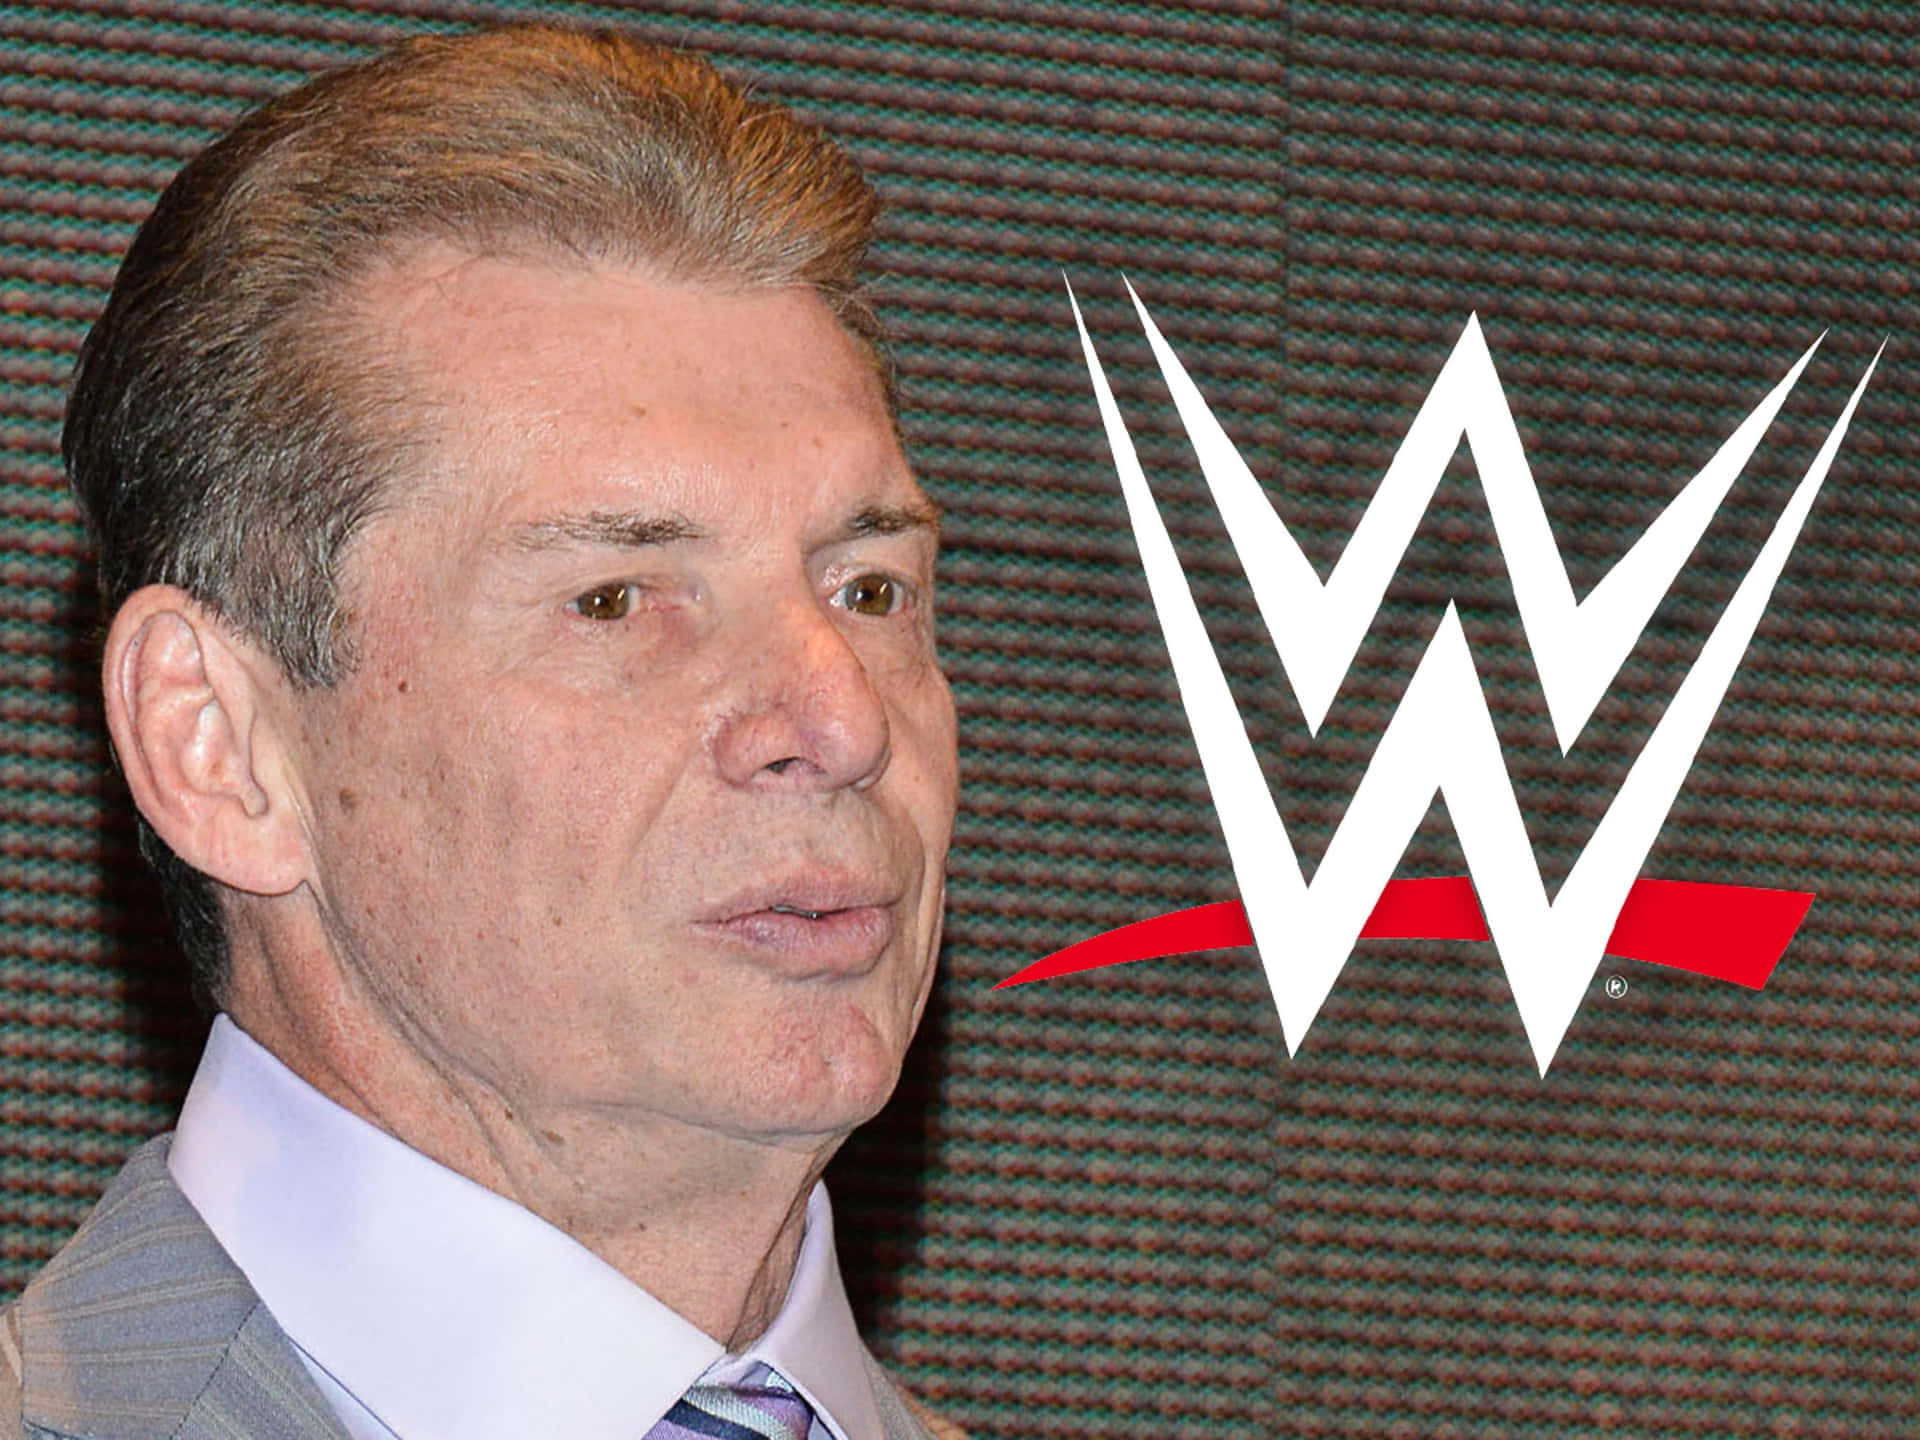 WWE-formanden Vince McMahon møder sin hårdeste udfordring endnu i The Great Khali. Wallpaper